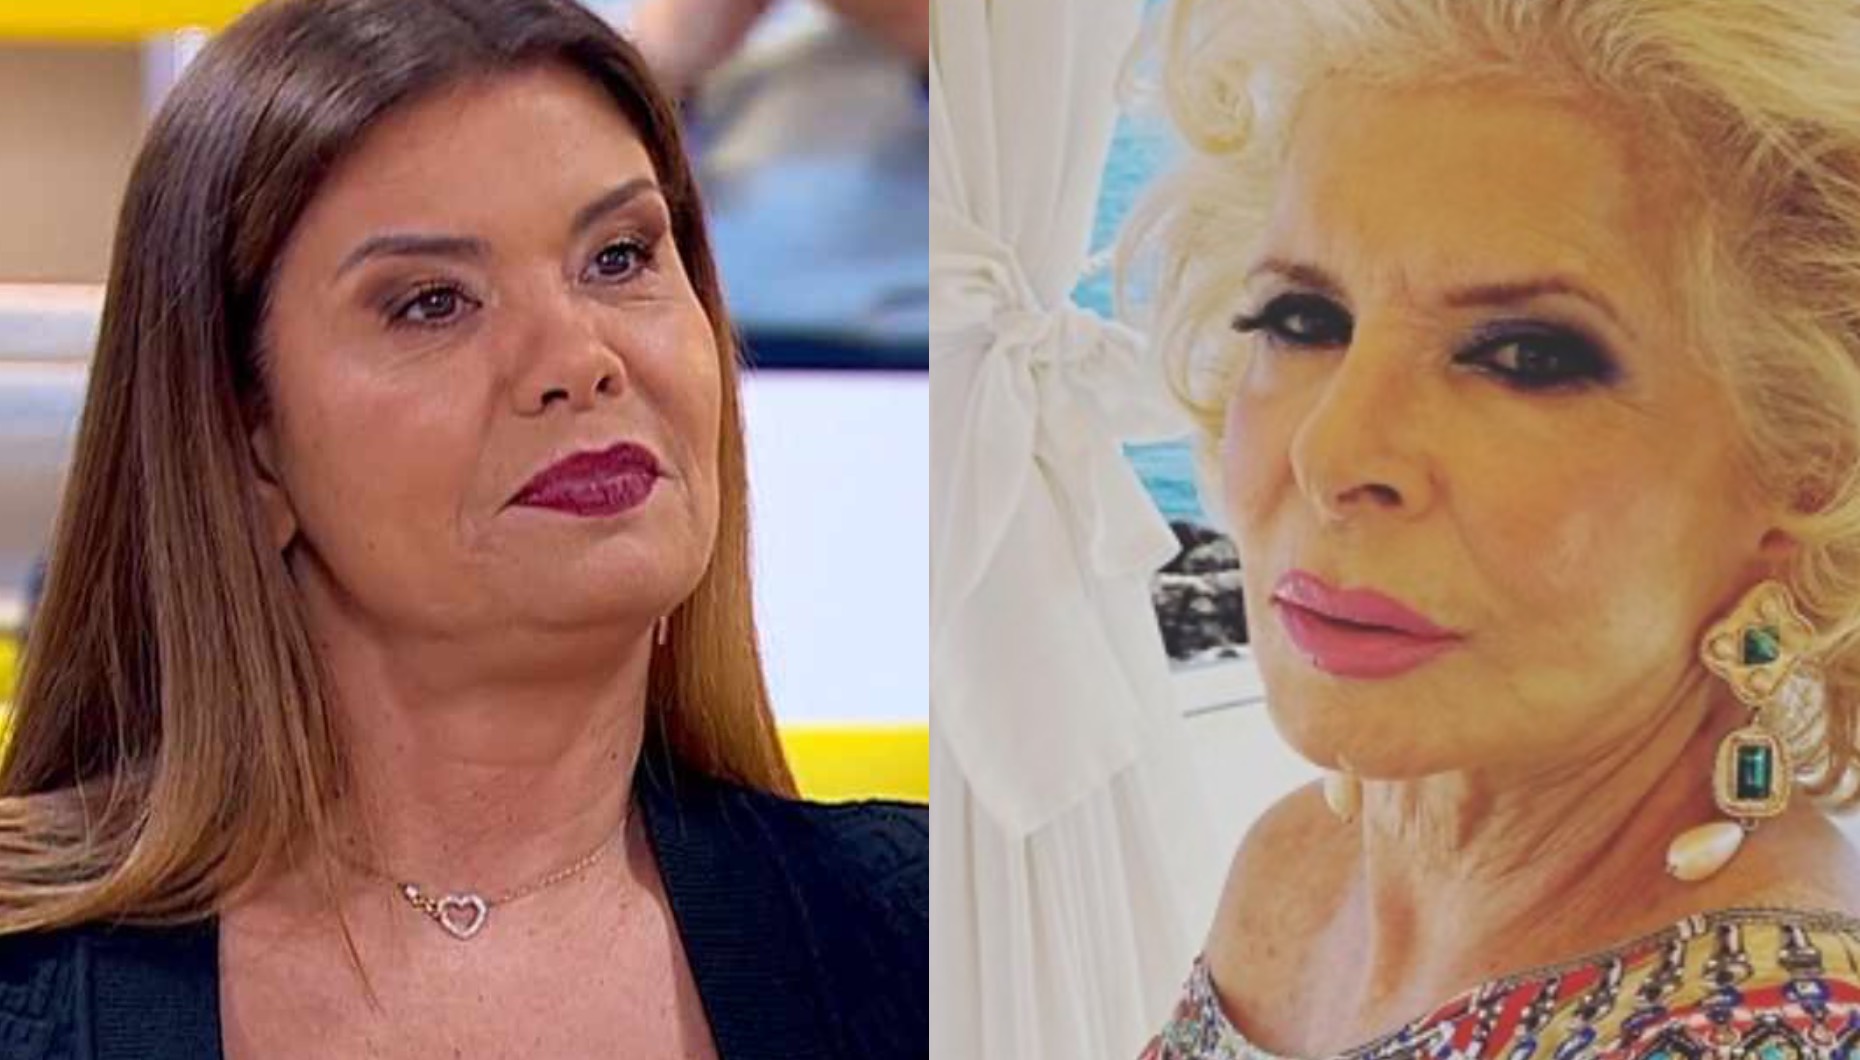 Gisela Serrano dá puxão de orelhas a Lili Caneças: "Não havia necessidade"